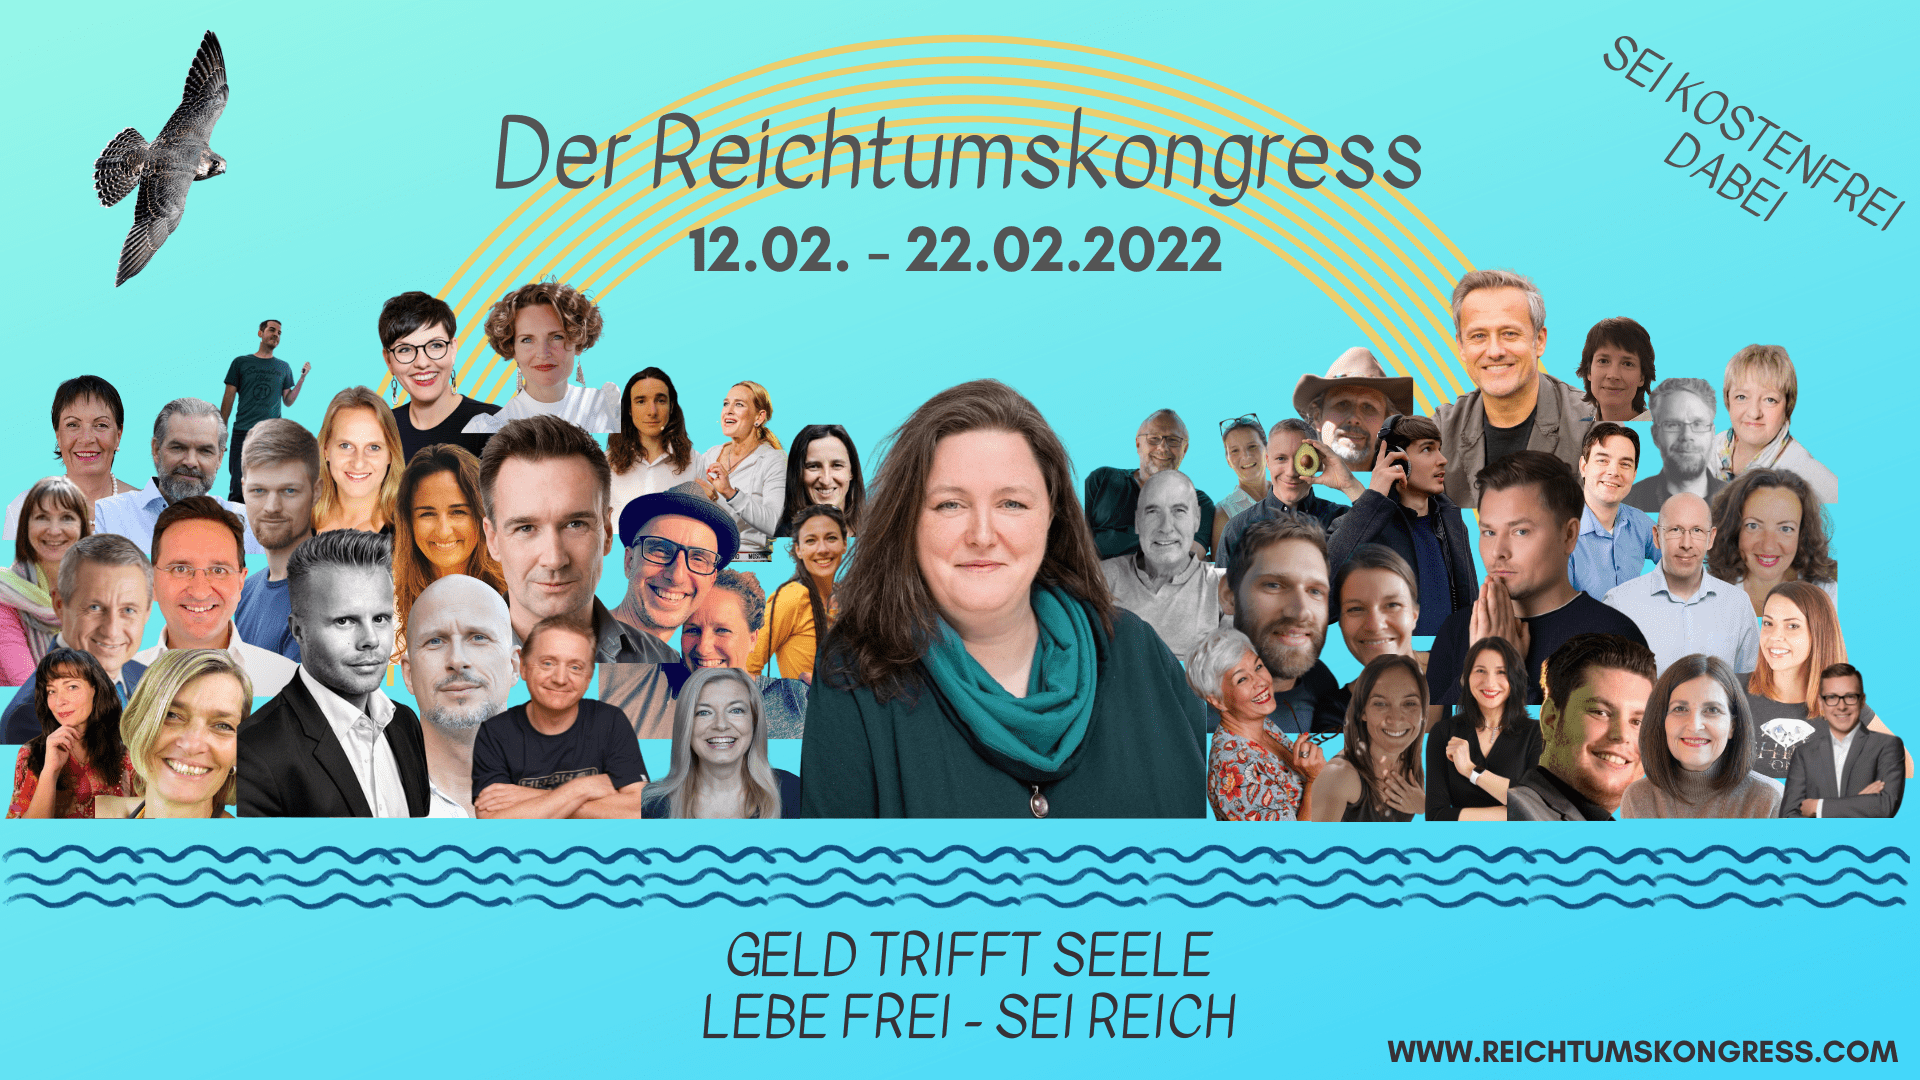 Reichtumskongress 2022 Online-Kongress